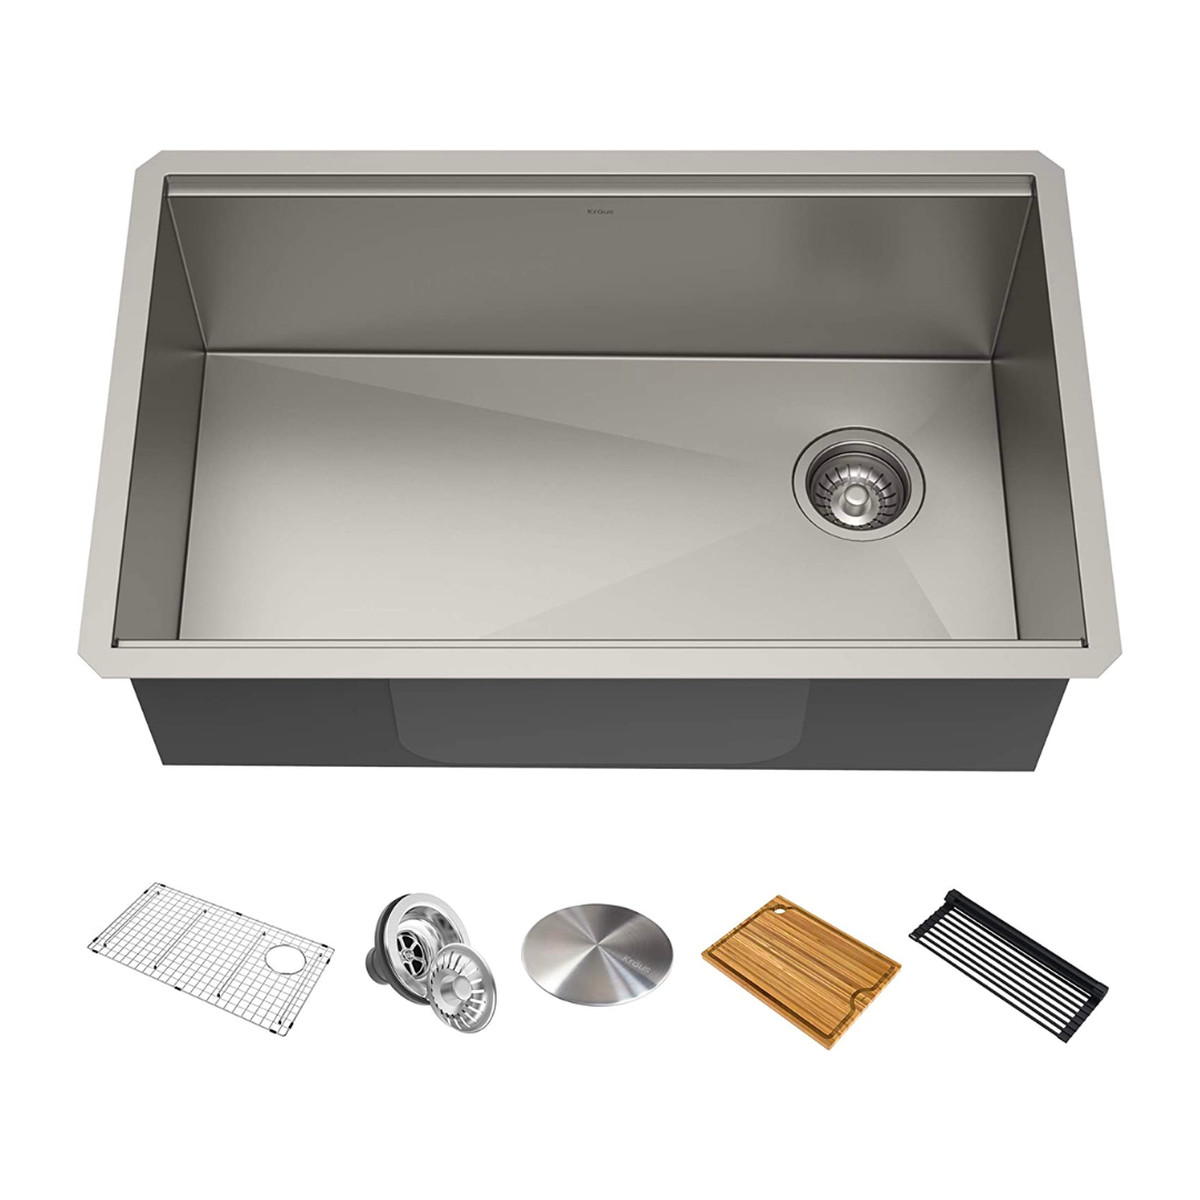 Kraus undermount stainless steel kitchen sink with featured accessories